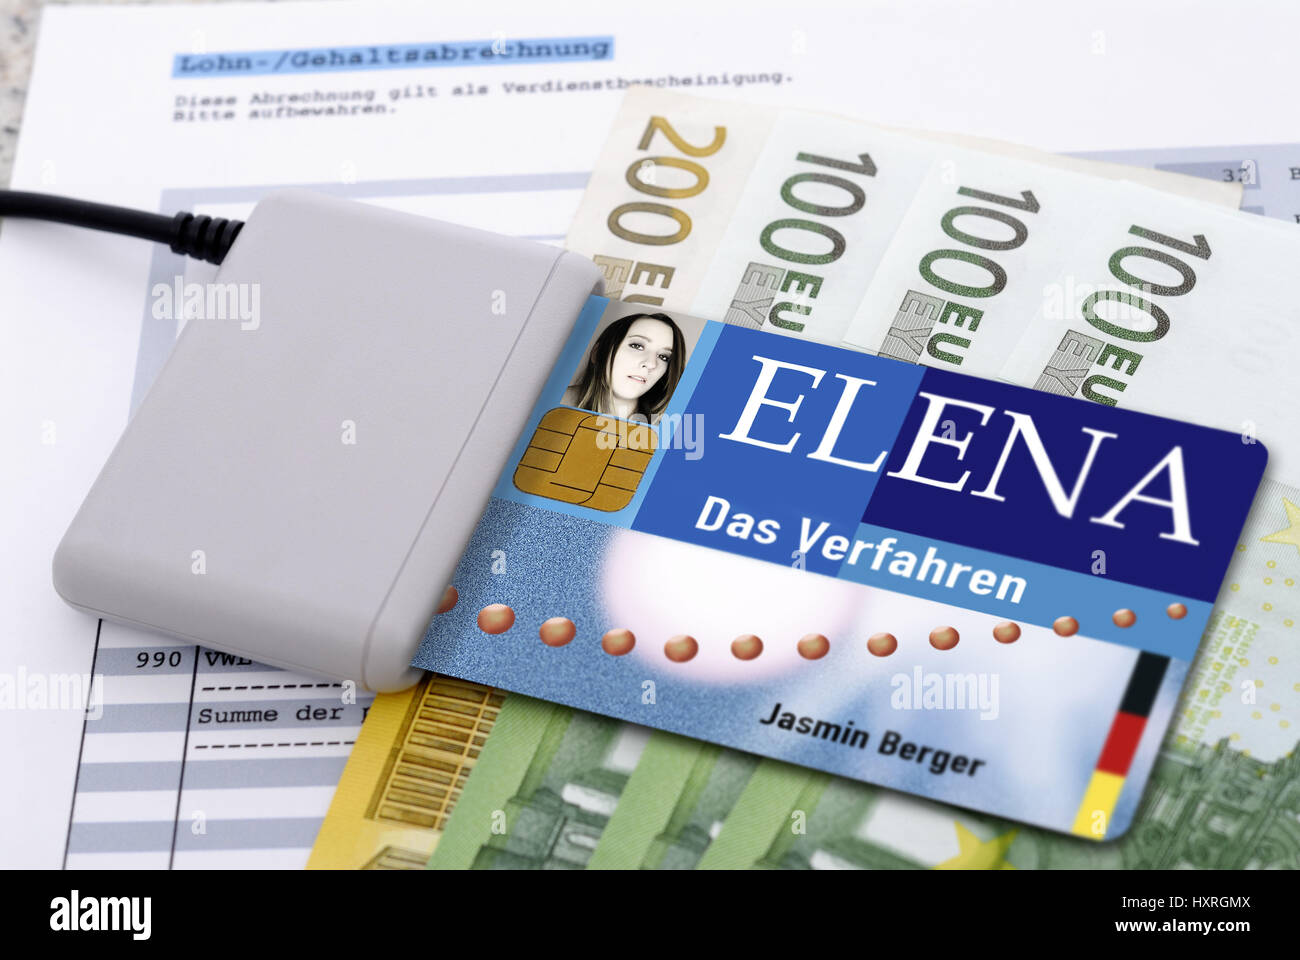 Elena, electronic reddito prova (picture complessivo), elektronischer Einkommensnachweis (Bildmontage) Foto Stock